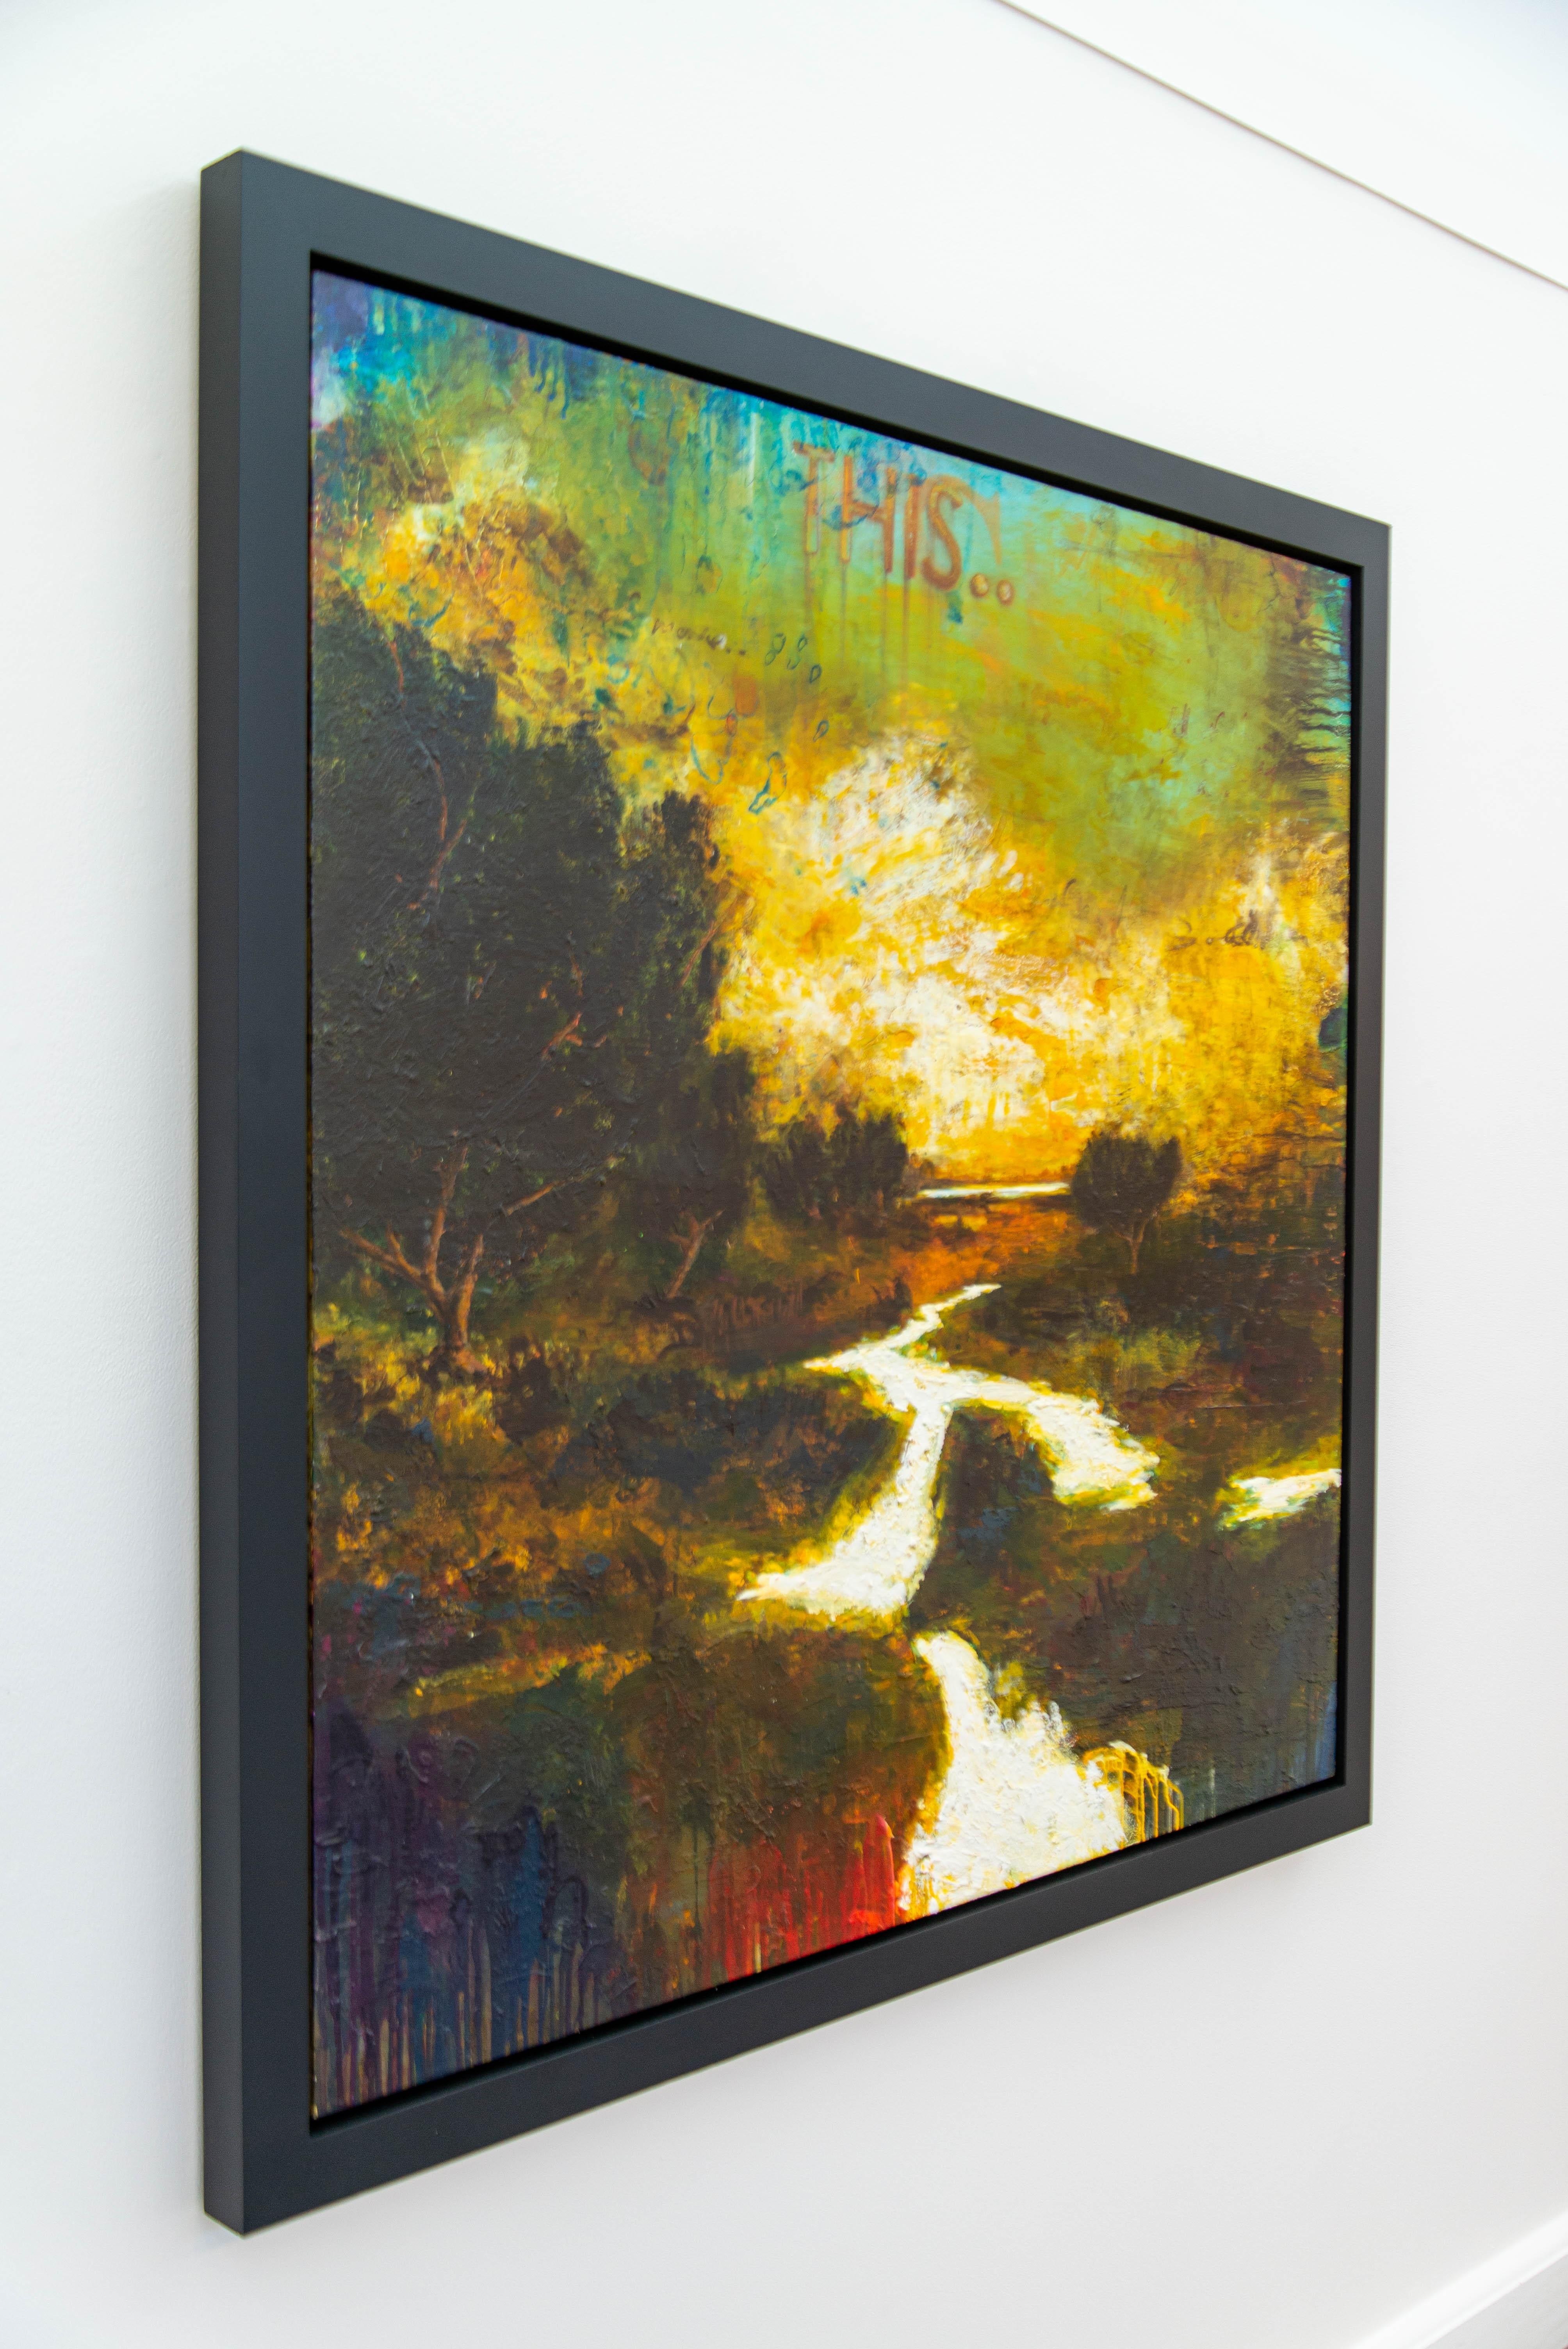 Une explosion de couleurs - jaune vif, turquoise et orange - attire l'œil du spectateur sur ce paysage dramatique de Sylvain Louis-Seize. L'artiste montréalais est connu pour ses formes abstraites et son utilisation audacieuse de la couleur. Ici, il